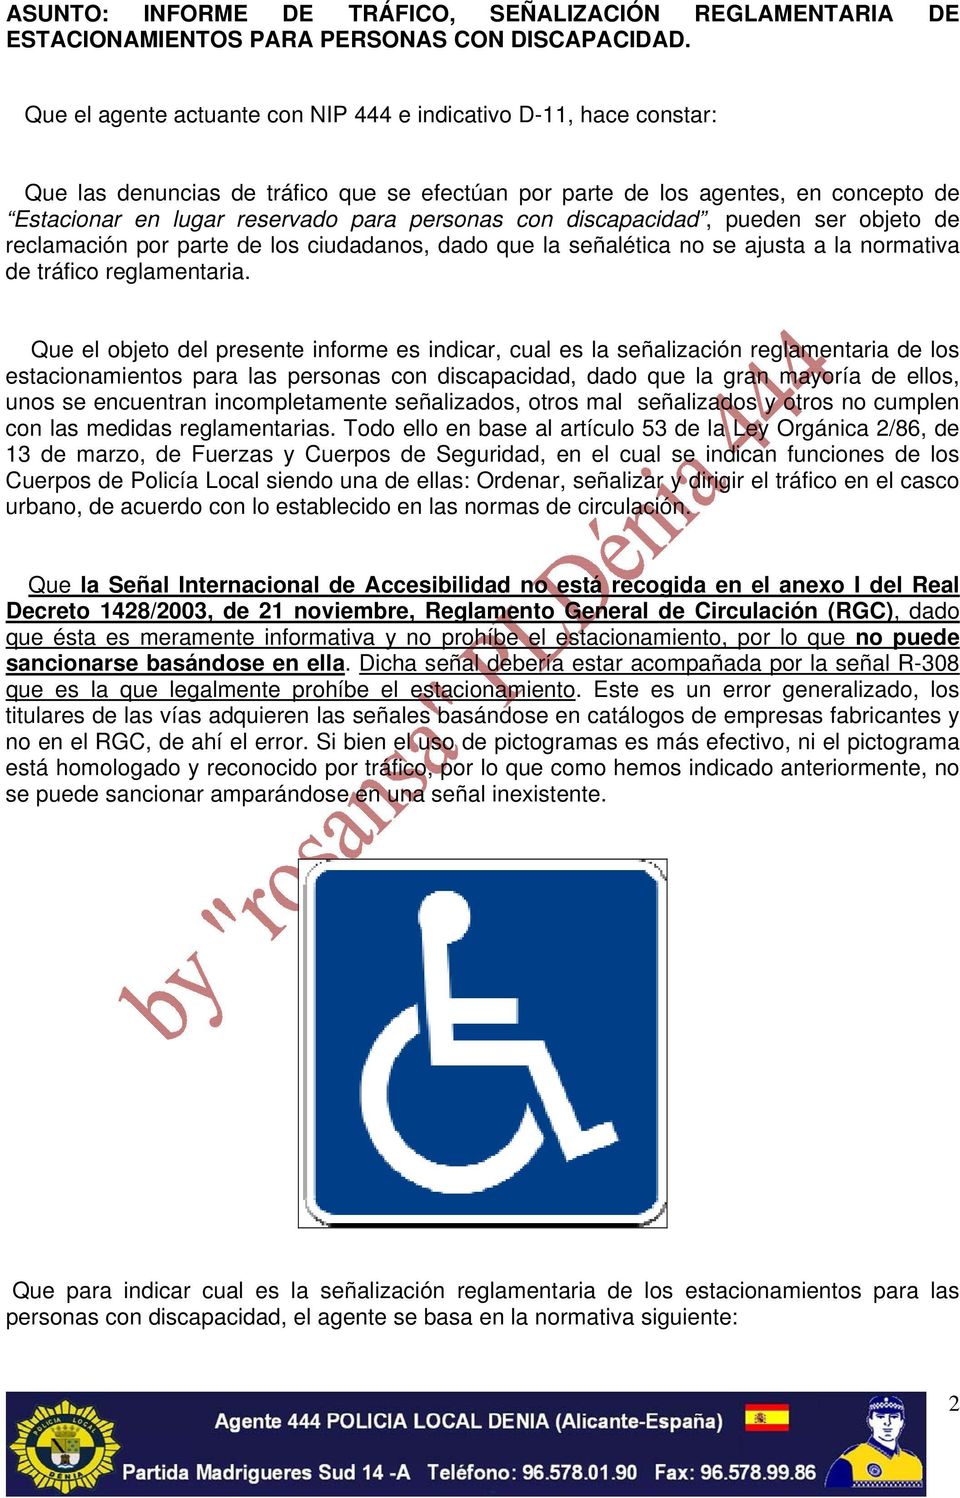 con discapacidad, pueden ser objeto de reclamación por parte de los ciudadanos, dado que la señalética no se ajusta a la normativa de tráfico reglamentaria.